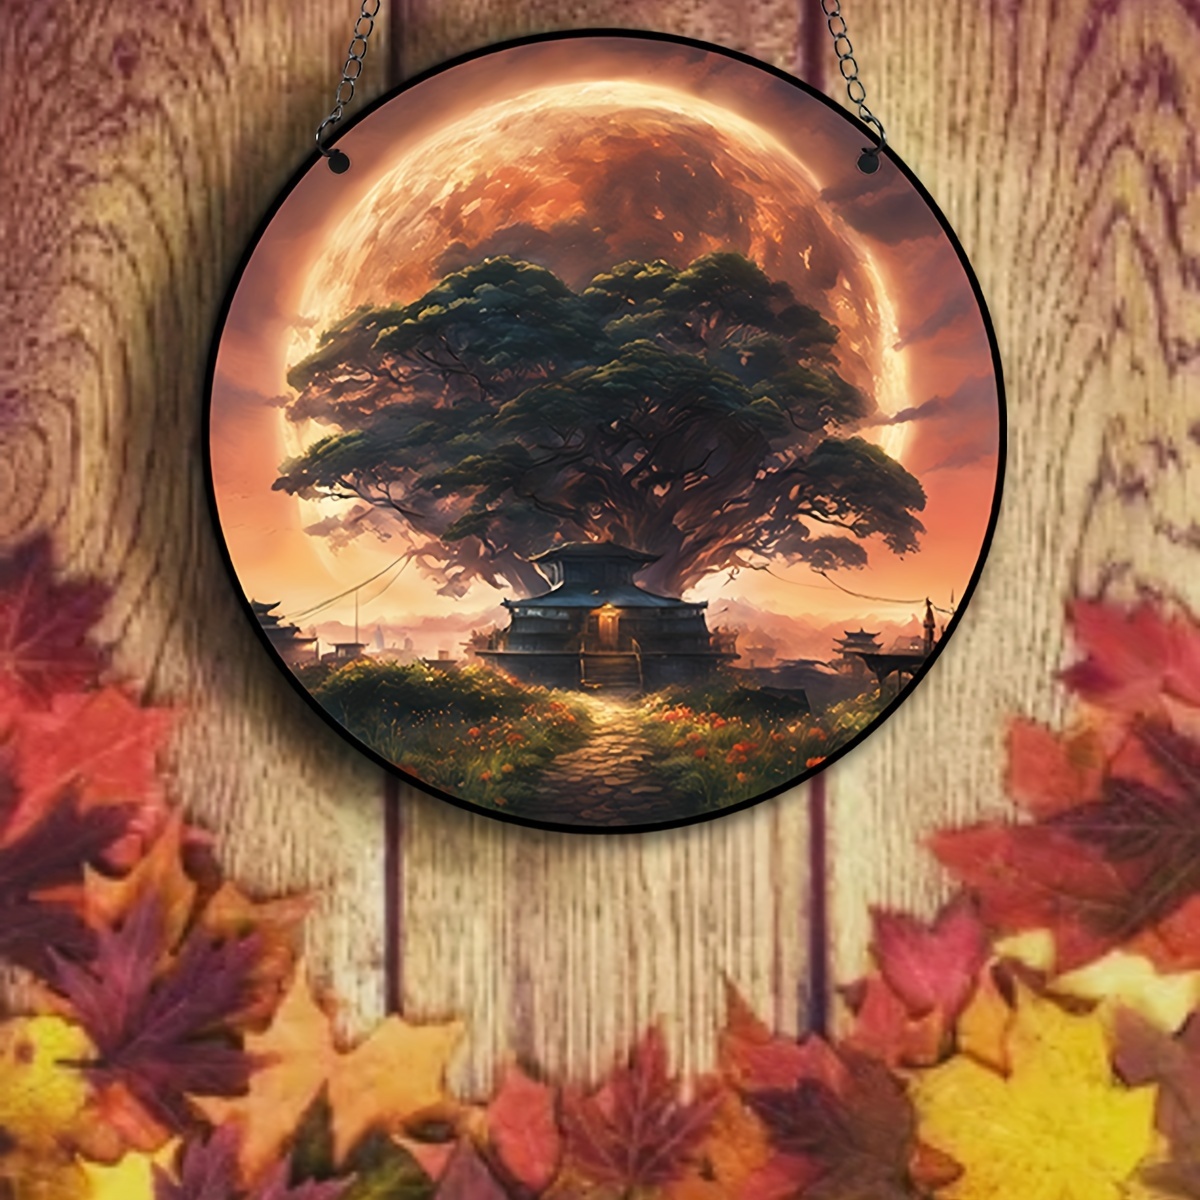 Attrape-soleil d'automne : Observer les feuilles d'arbres